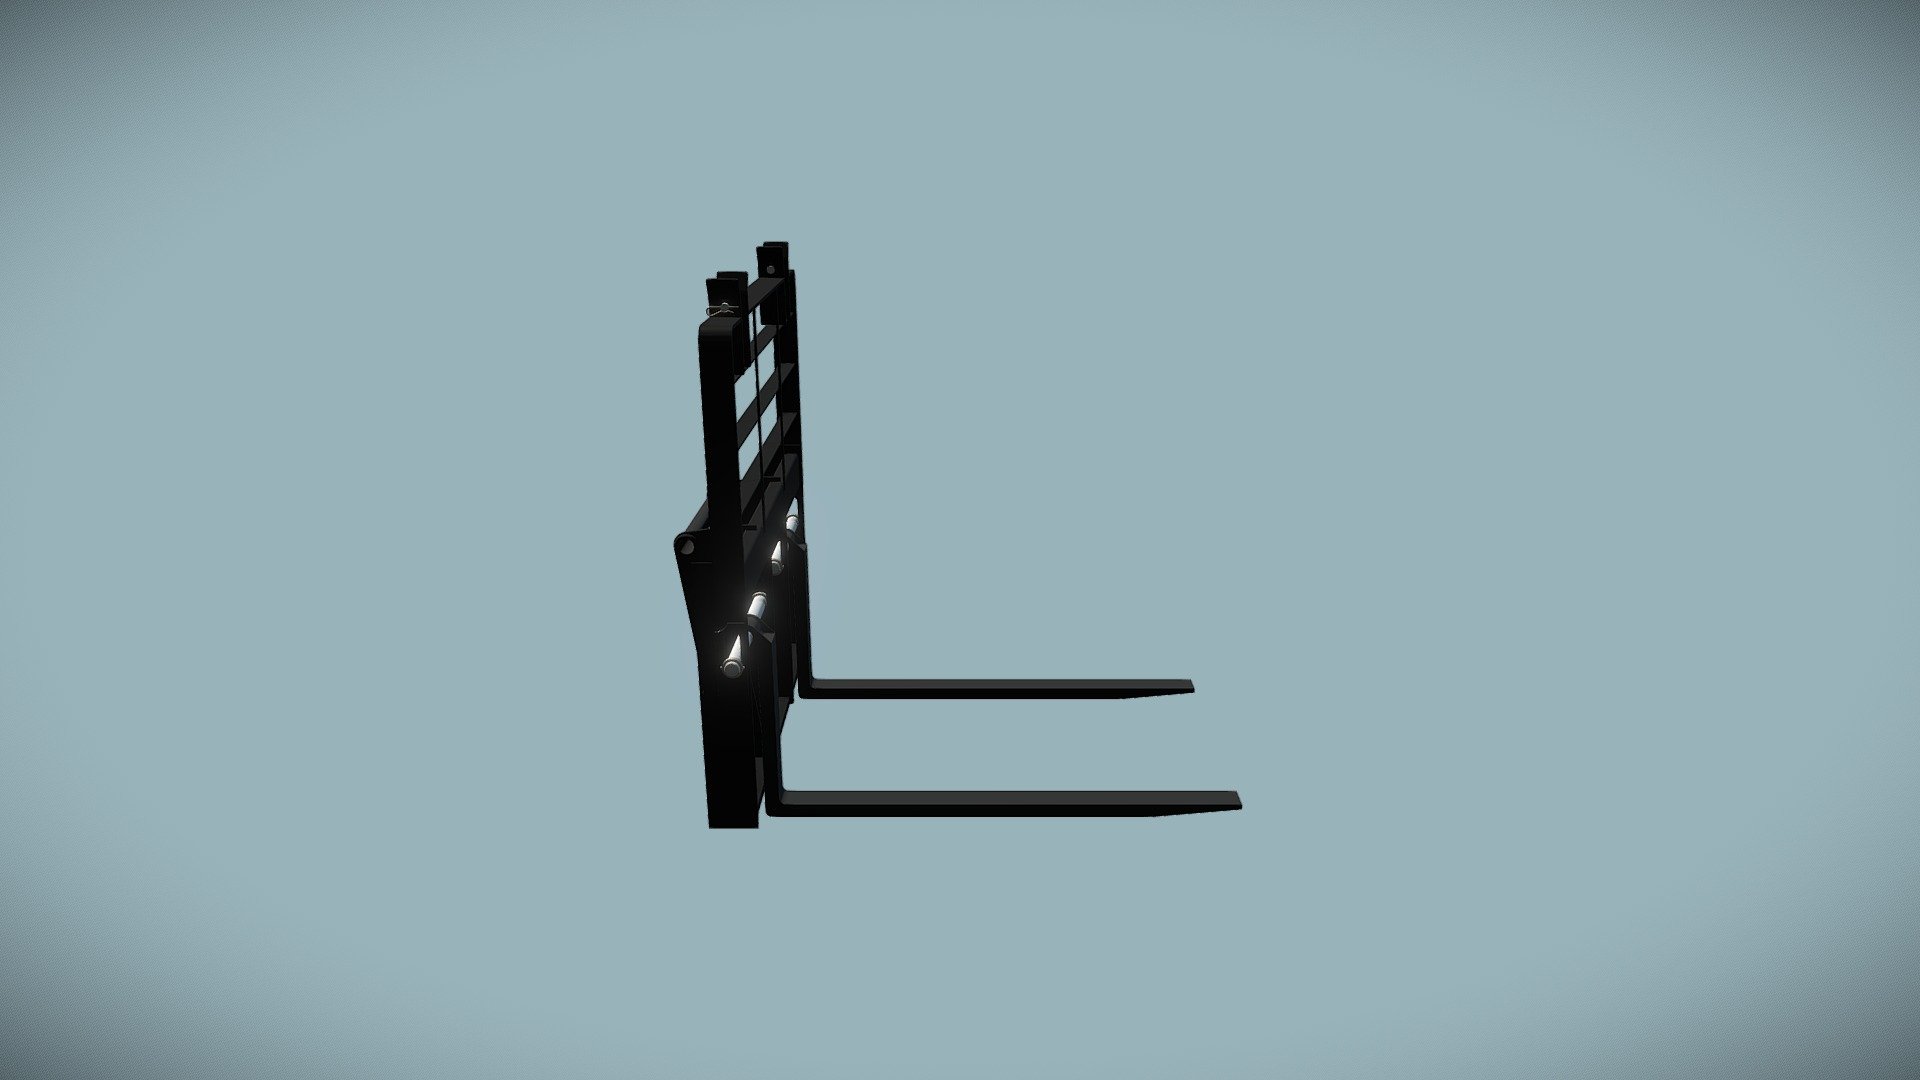 Fork attachment for loader - Pallet Fork - 3D model by jeant408 3d model